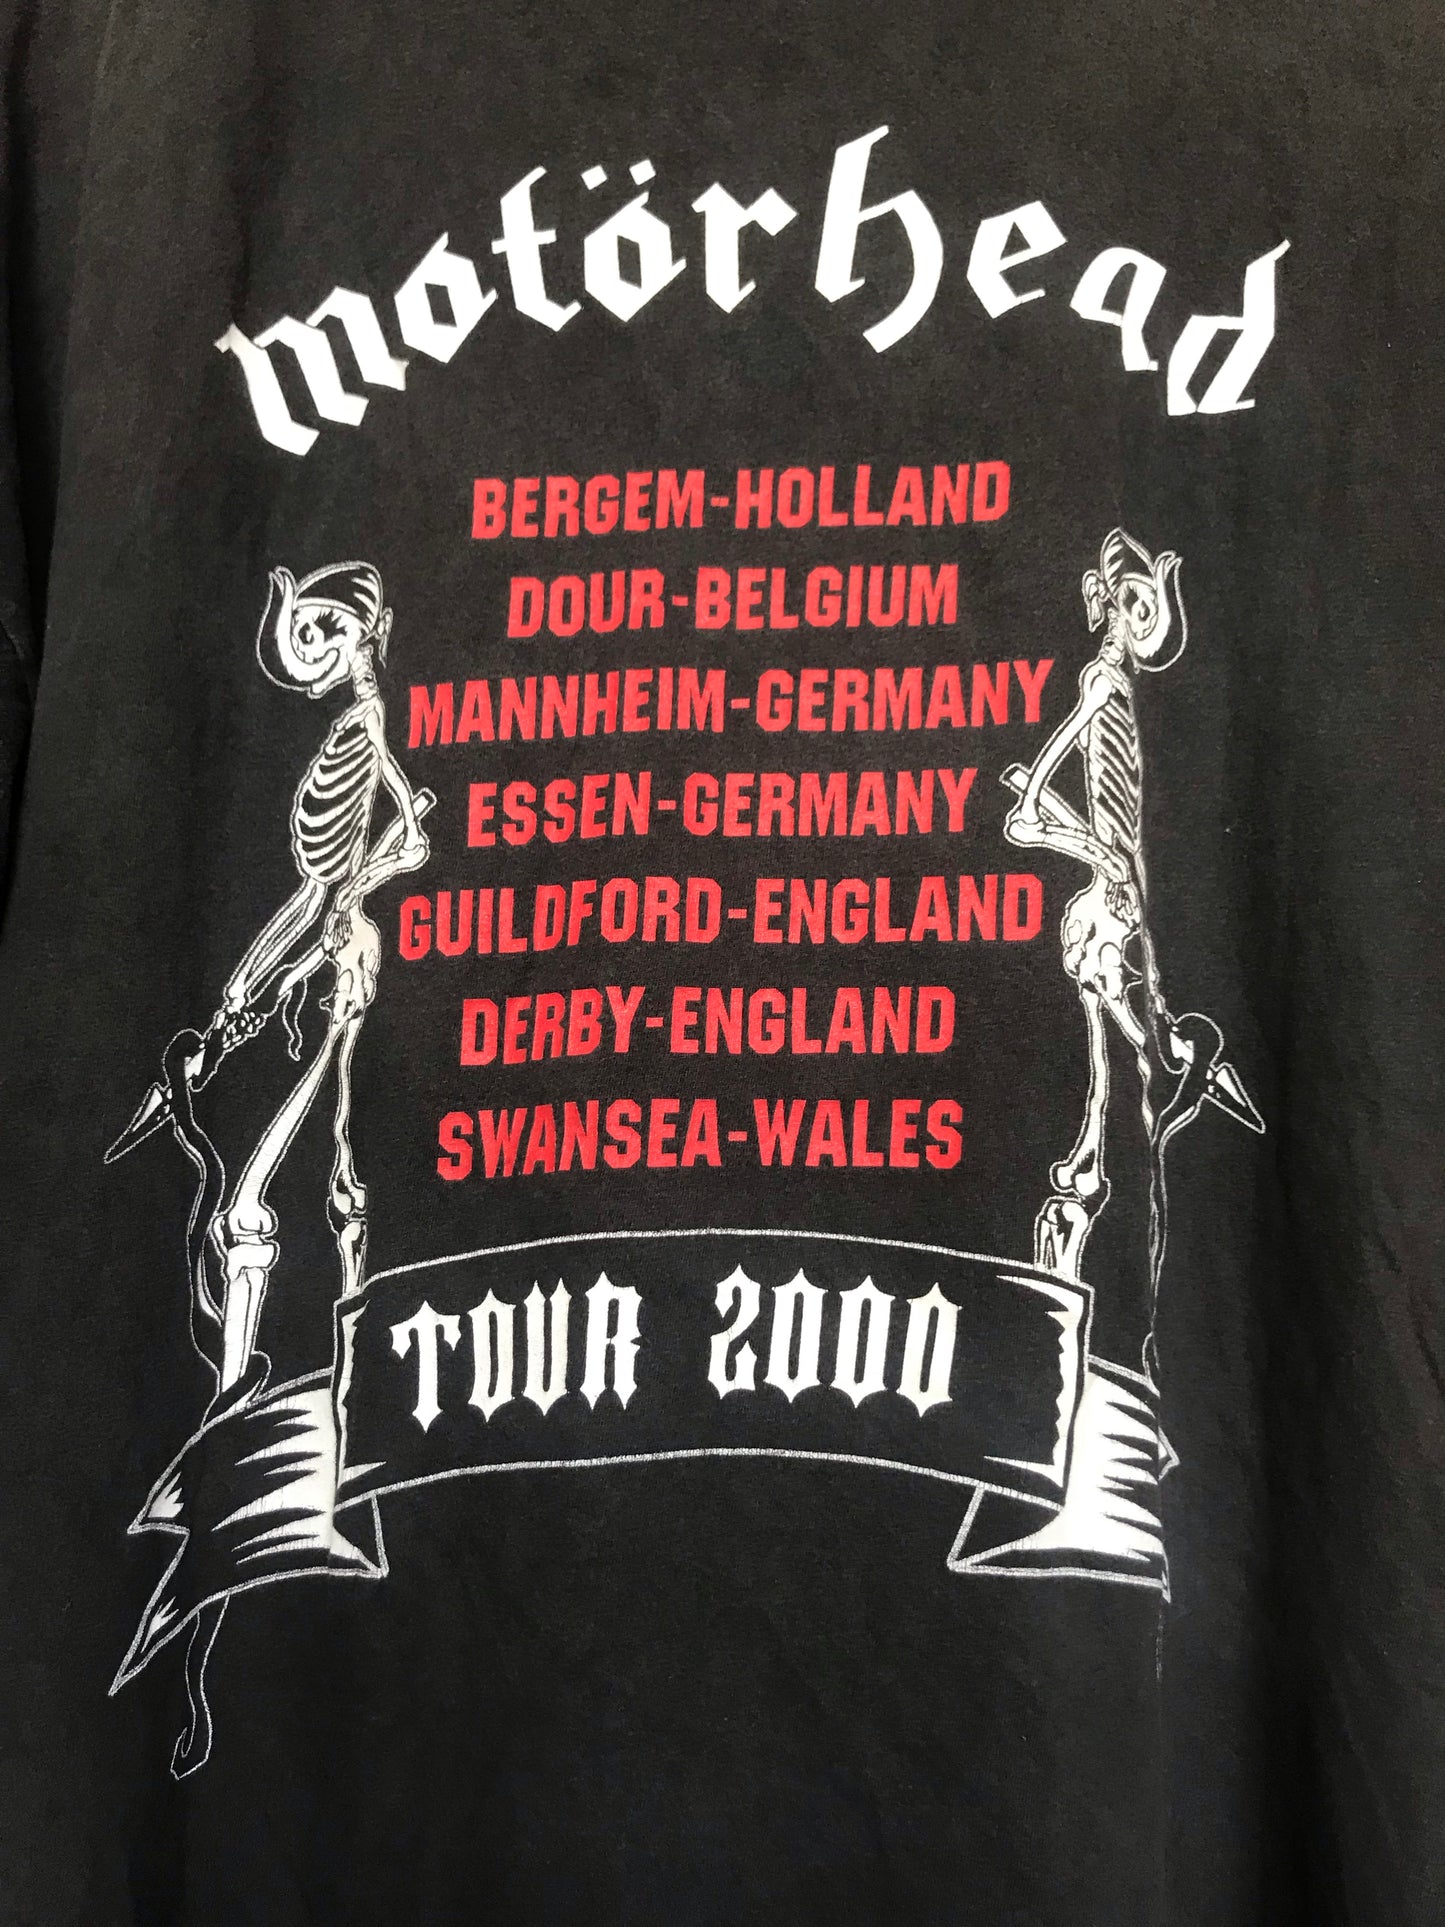 Motörhead 2000 Tour Tee